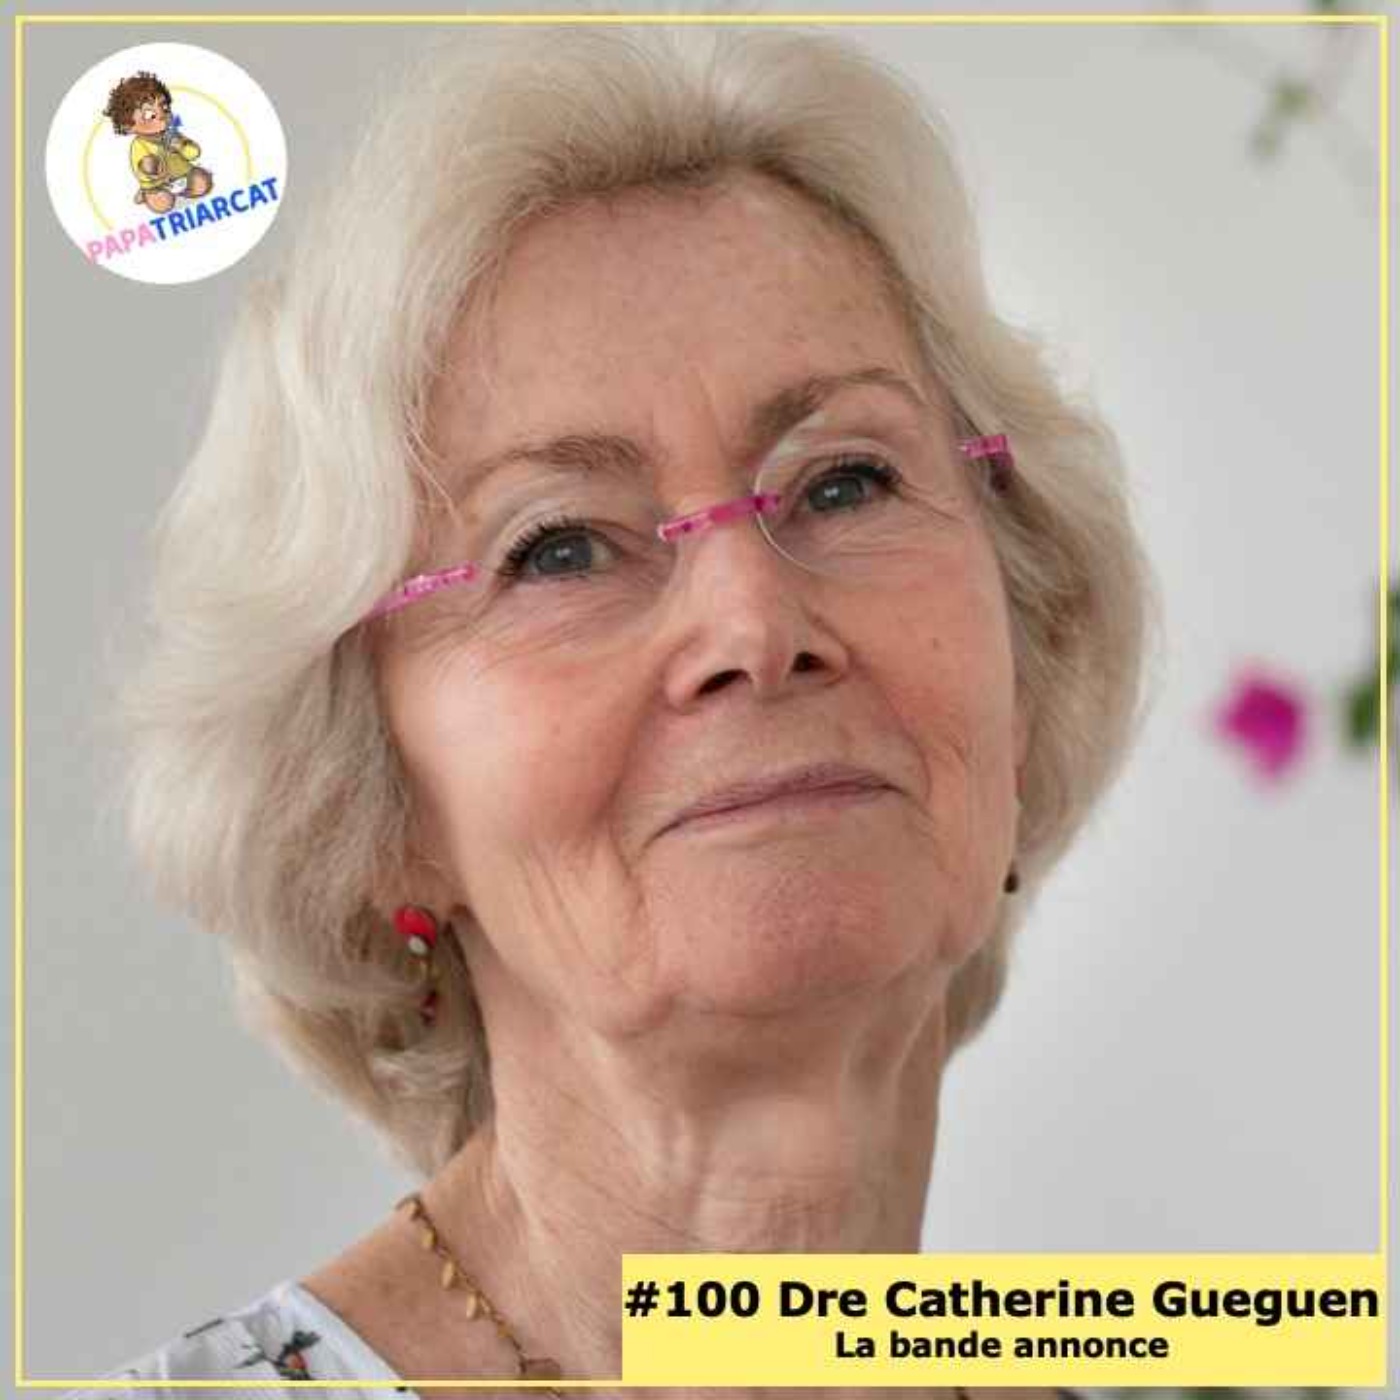 BANDE ANNONCE #100 - Petites et grandes questions pour une enfance heureuse - Dre Catherine Gueguen